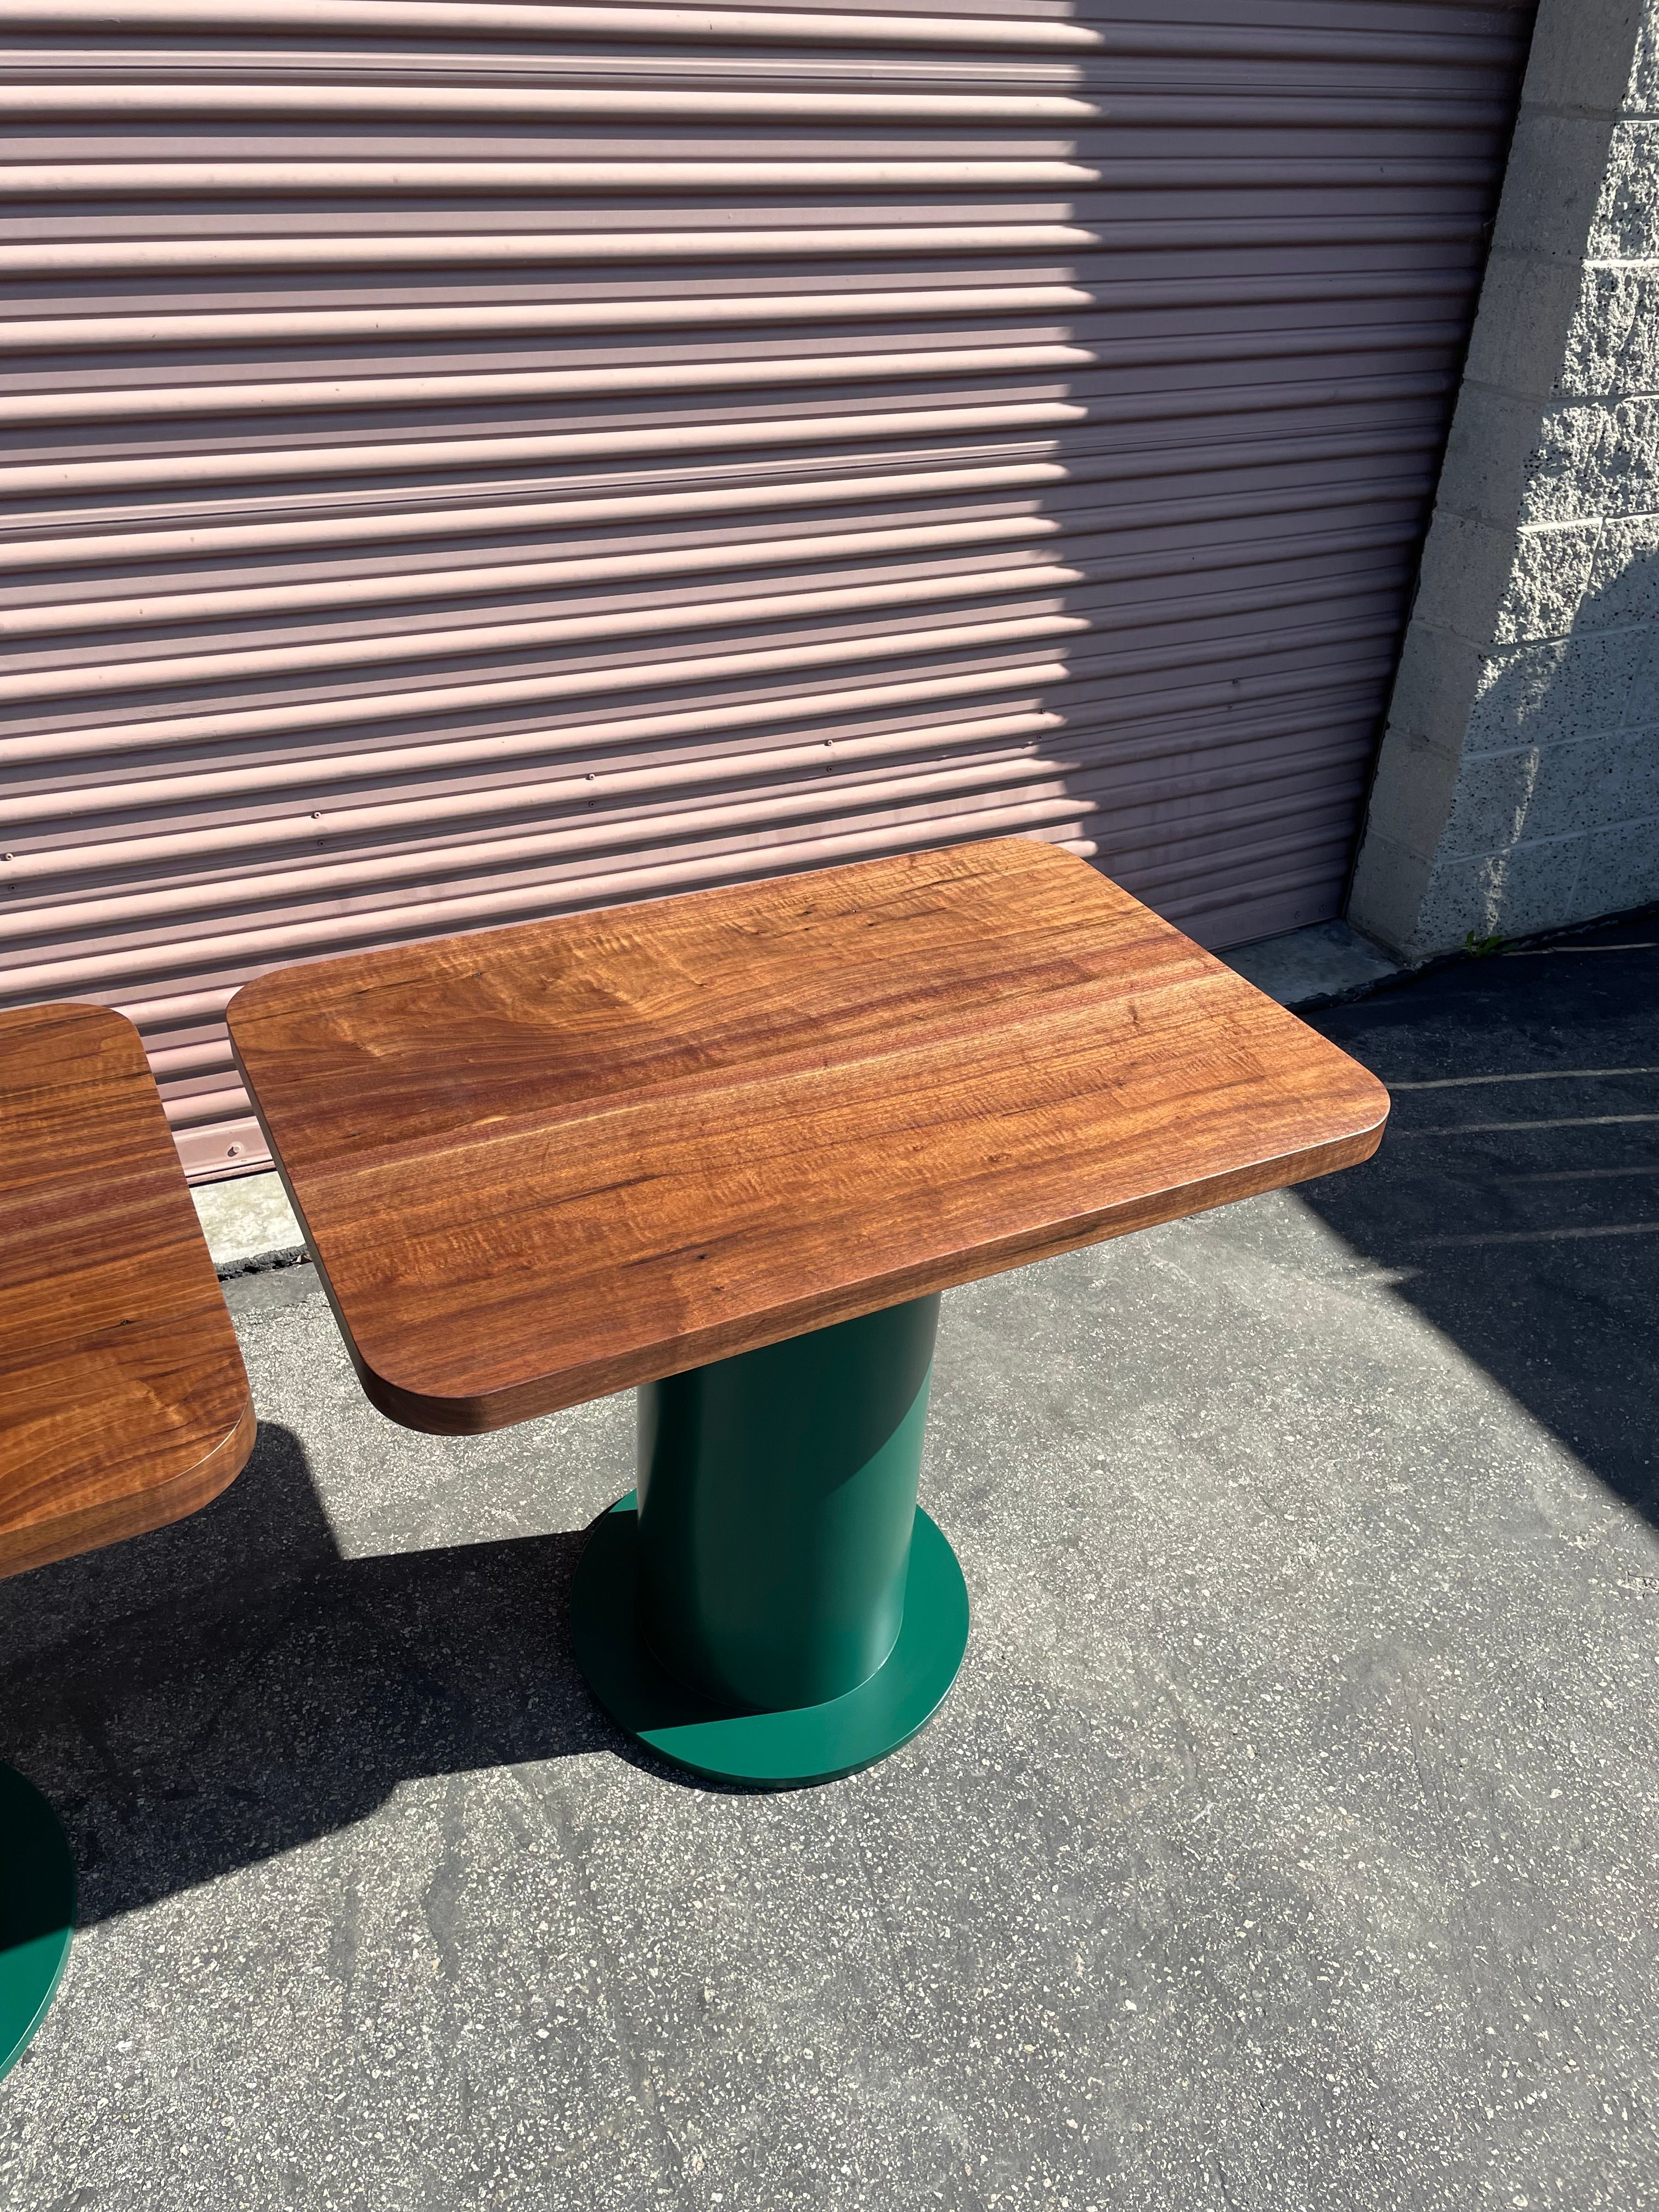  Pedestal Tables - Folklor LA product image 6